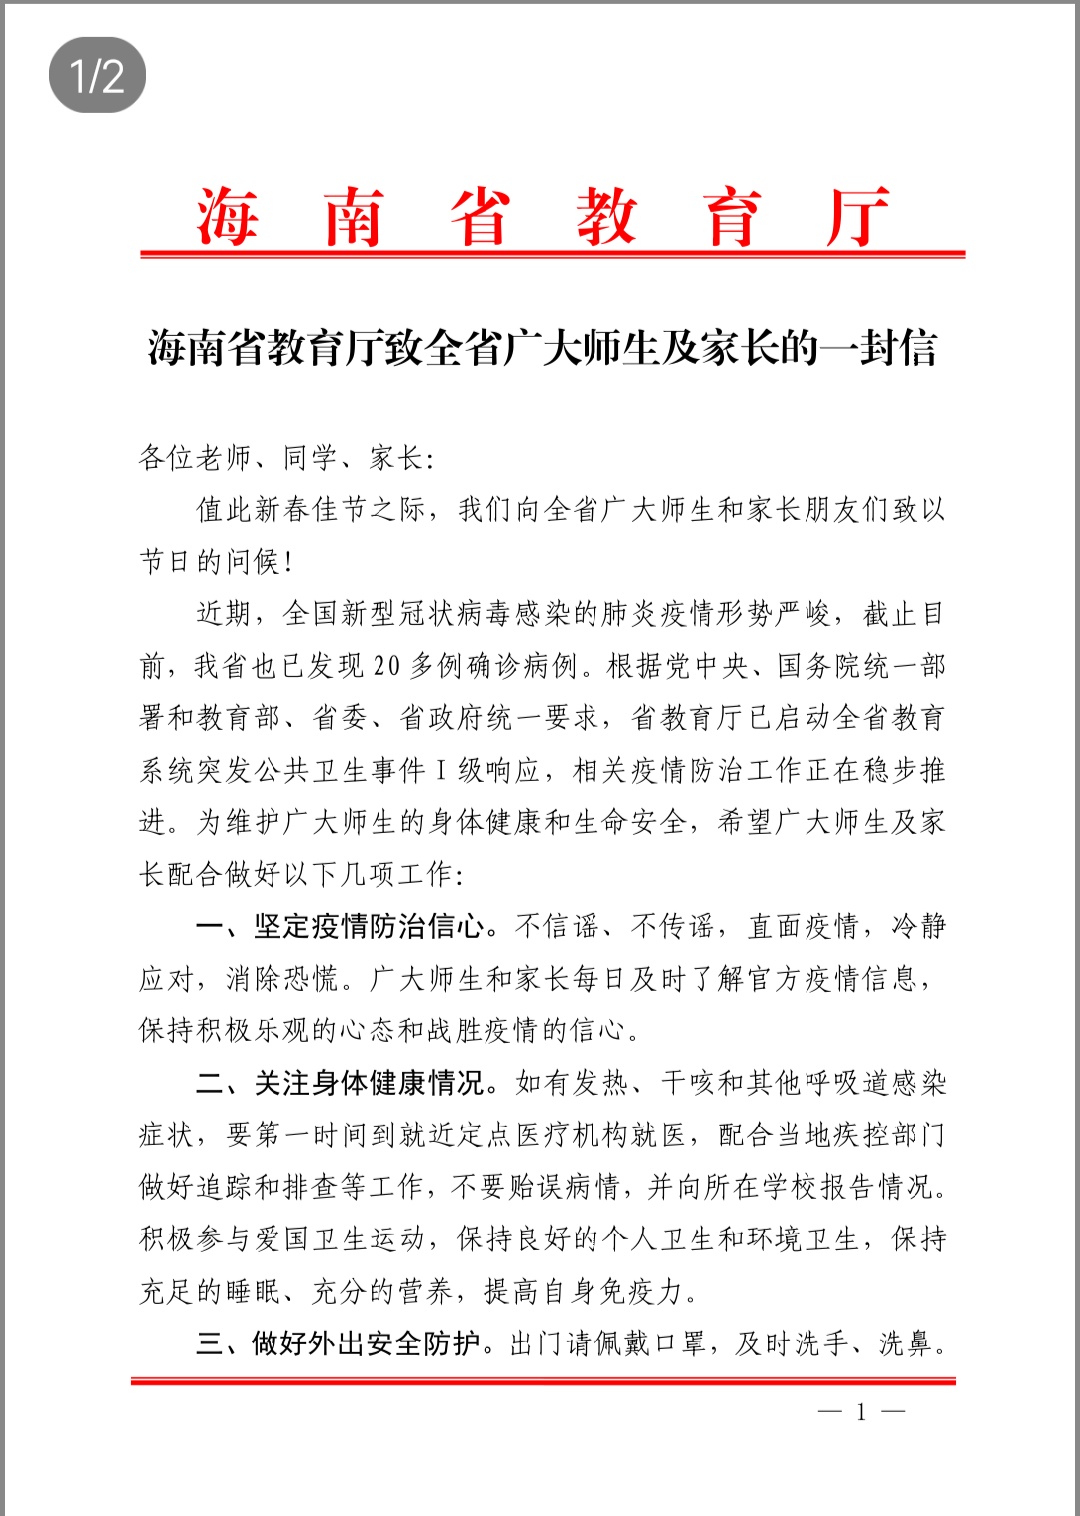 海南省教育厅致全省广大师生及家长的一封信